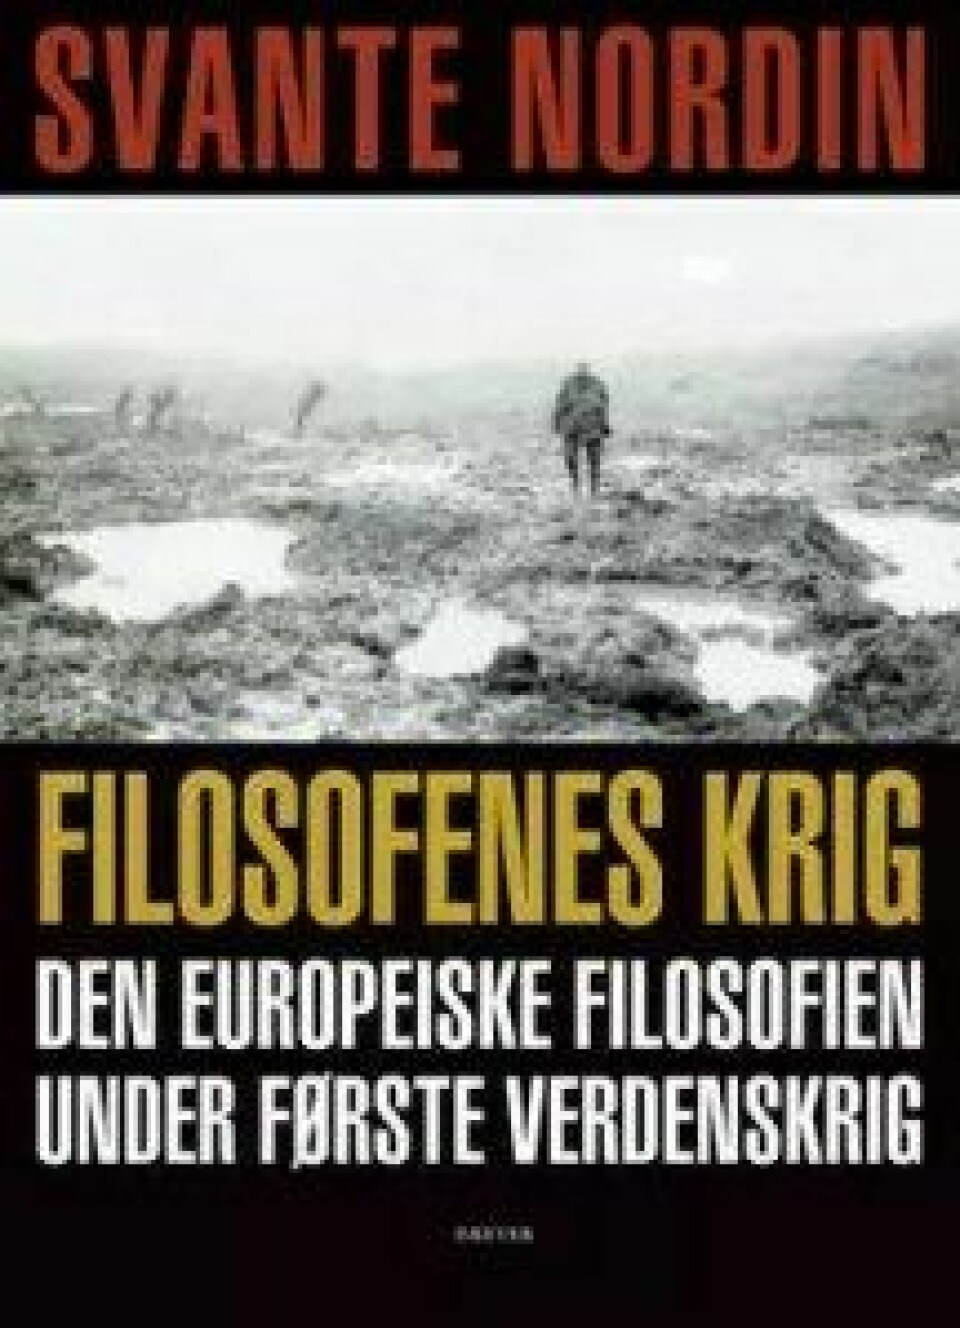 Filosofenes krig – Den europeiske filosofien under første verdenskrig av Svante Nordin, Dreyers Forlag (2015).